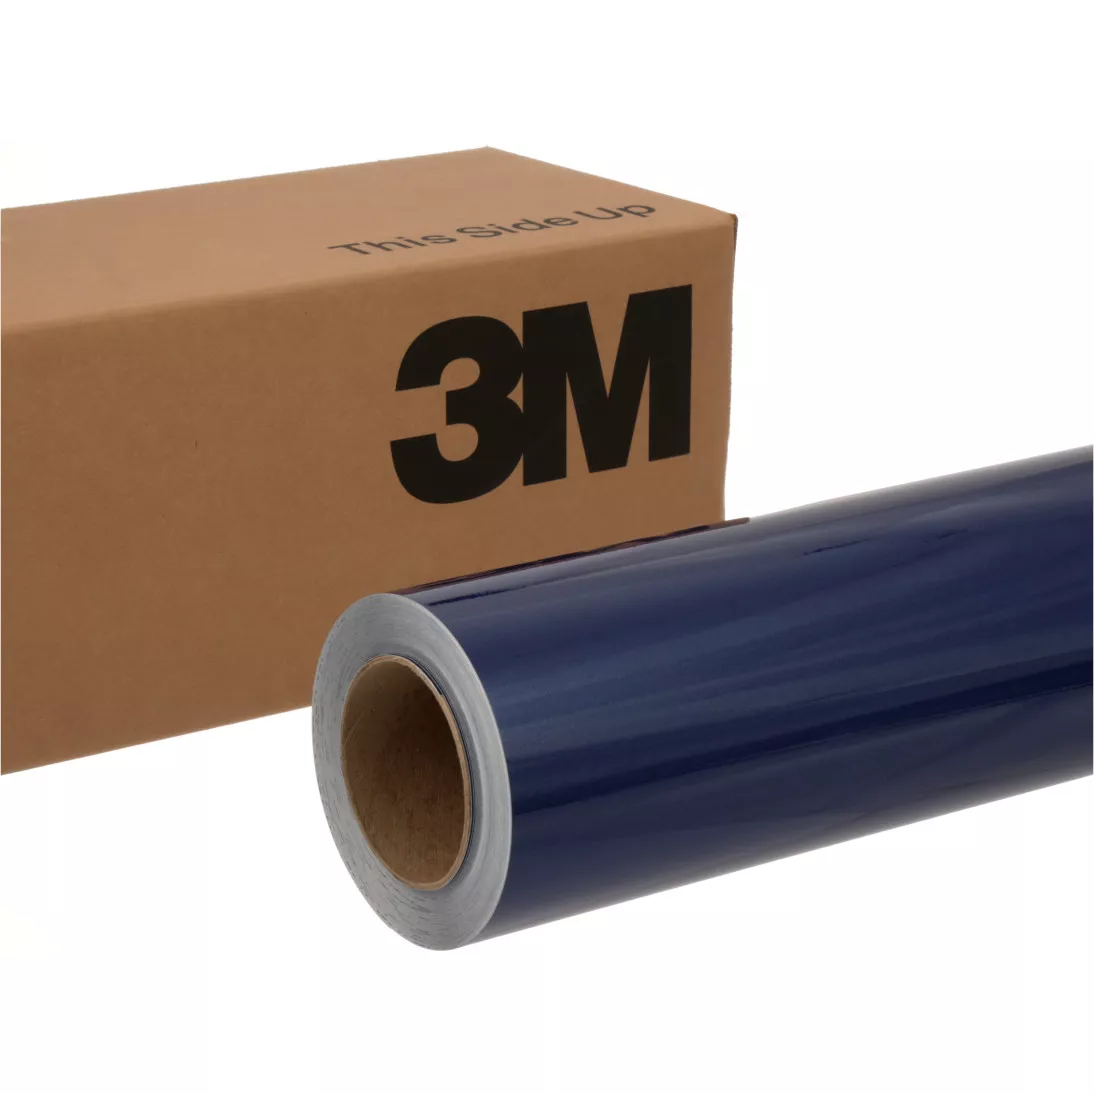 3M™ Wrap Film 2080-G217, Deep Blue Metallic, 60 in x 25 yd, 1 Roll/Case